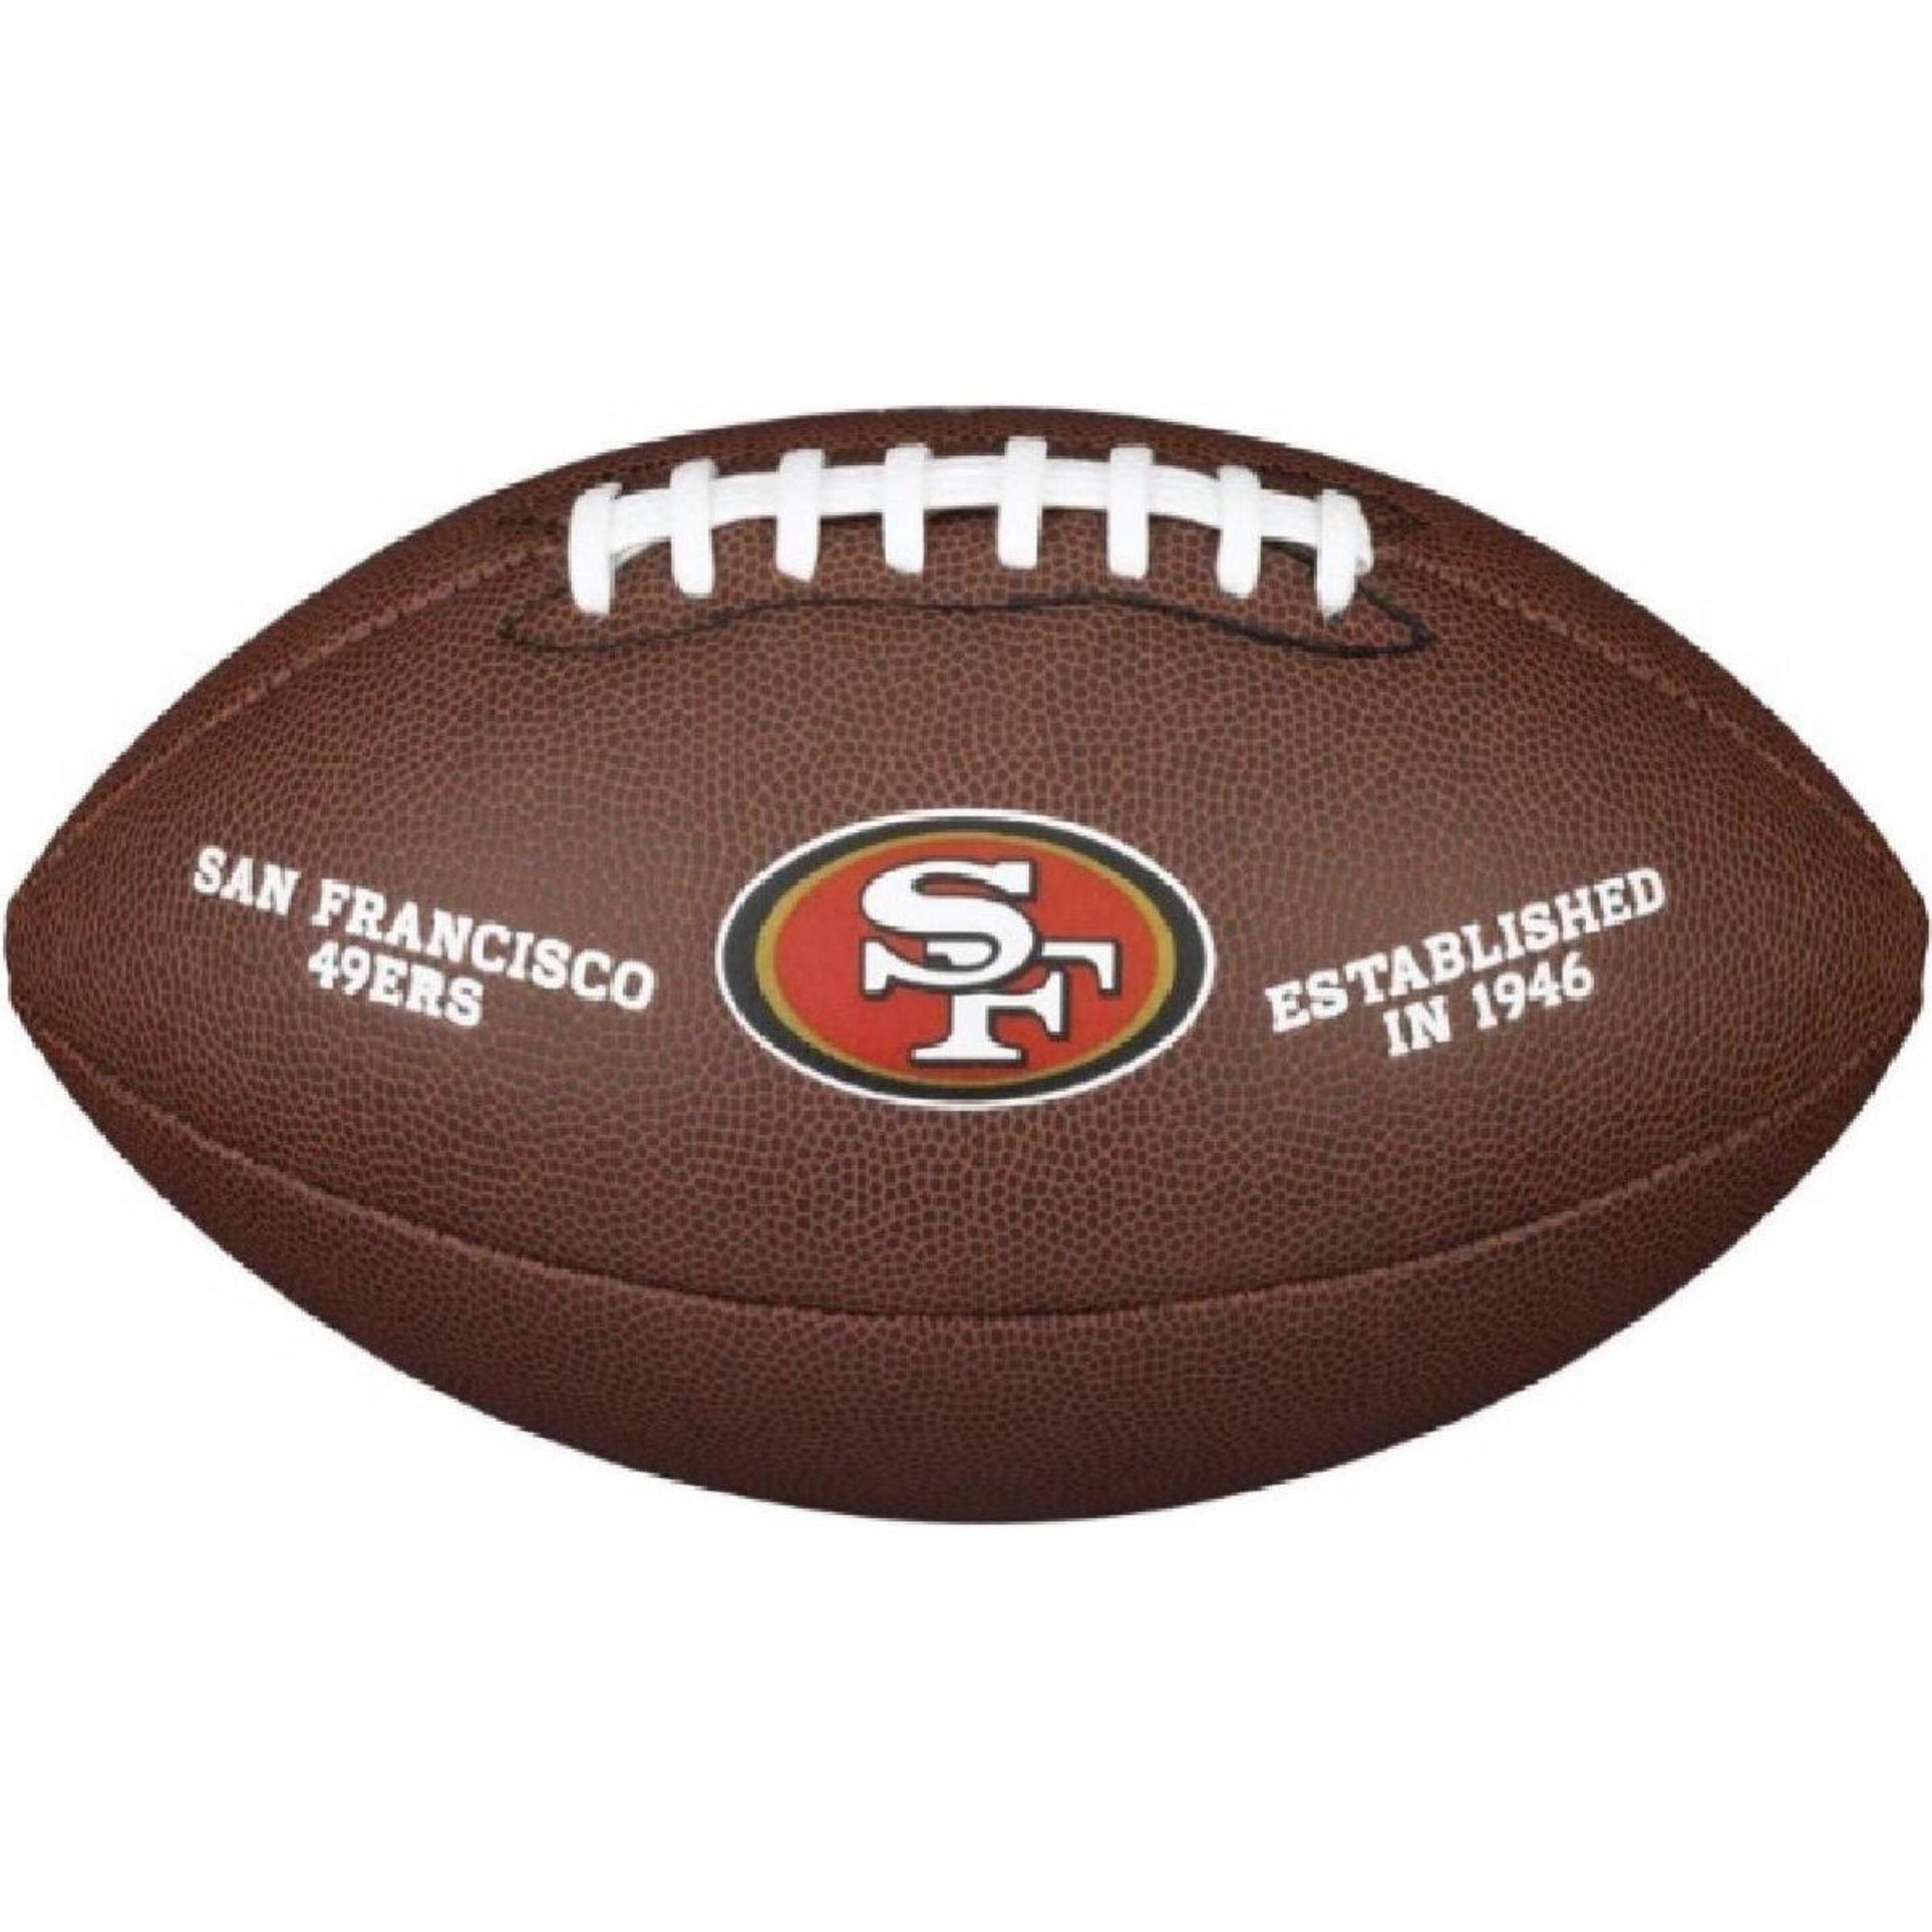 Balón De Fútbol Americano Wilson Nfl 49ers - marron - 